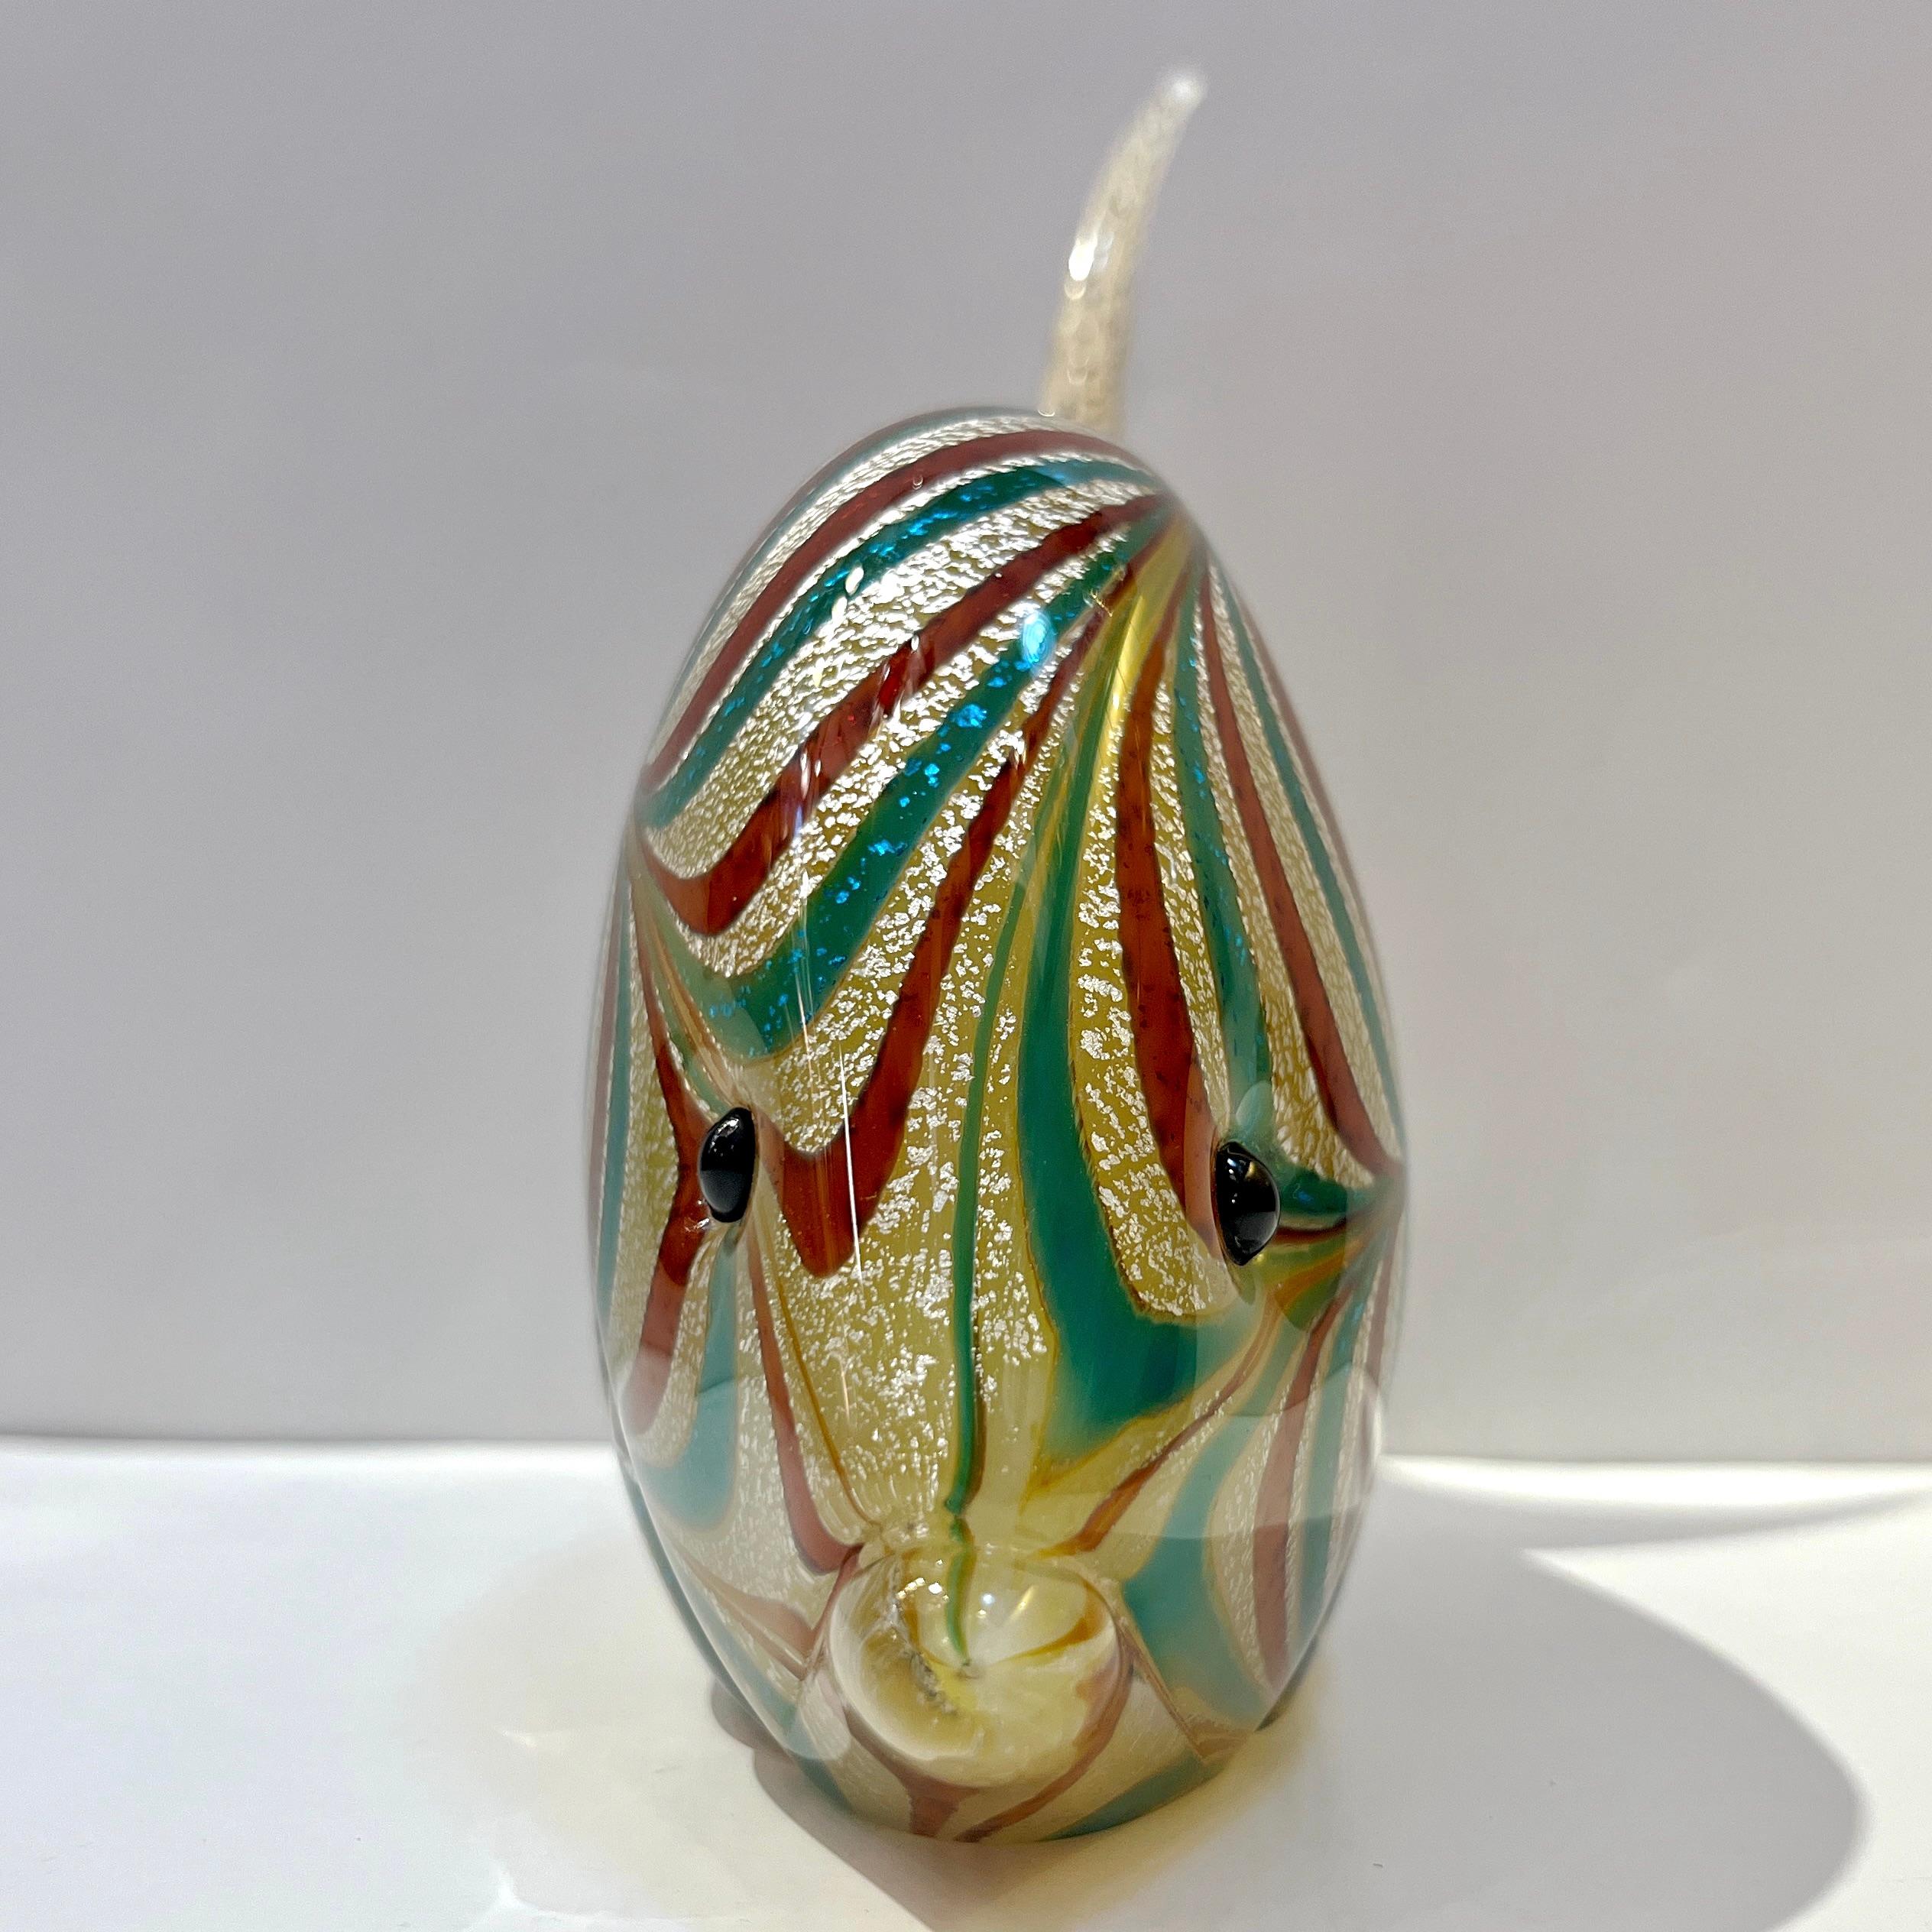 Poisson sculptural italien des années 1960 en verre de Murano, de facture exquise, attribué à Archimede Seguso. Elle est réalisée selon la technique Sommerso, une couche de verre cristallin, soufflée sur le noyau de verre couleur pierre ambrée,